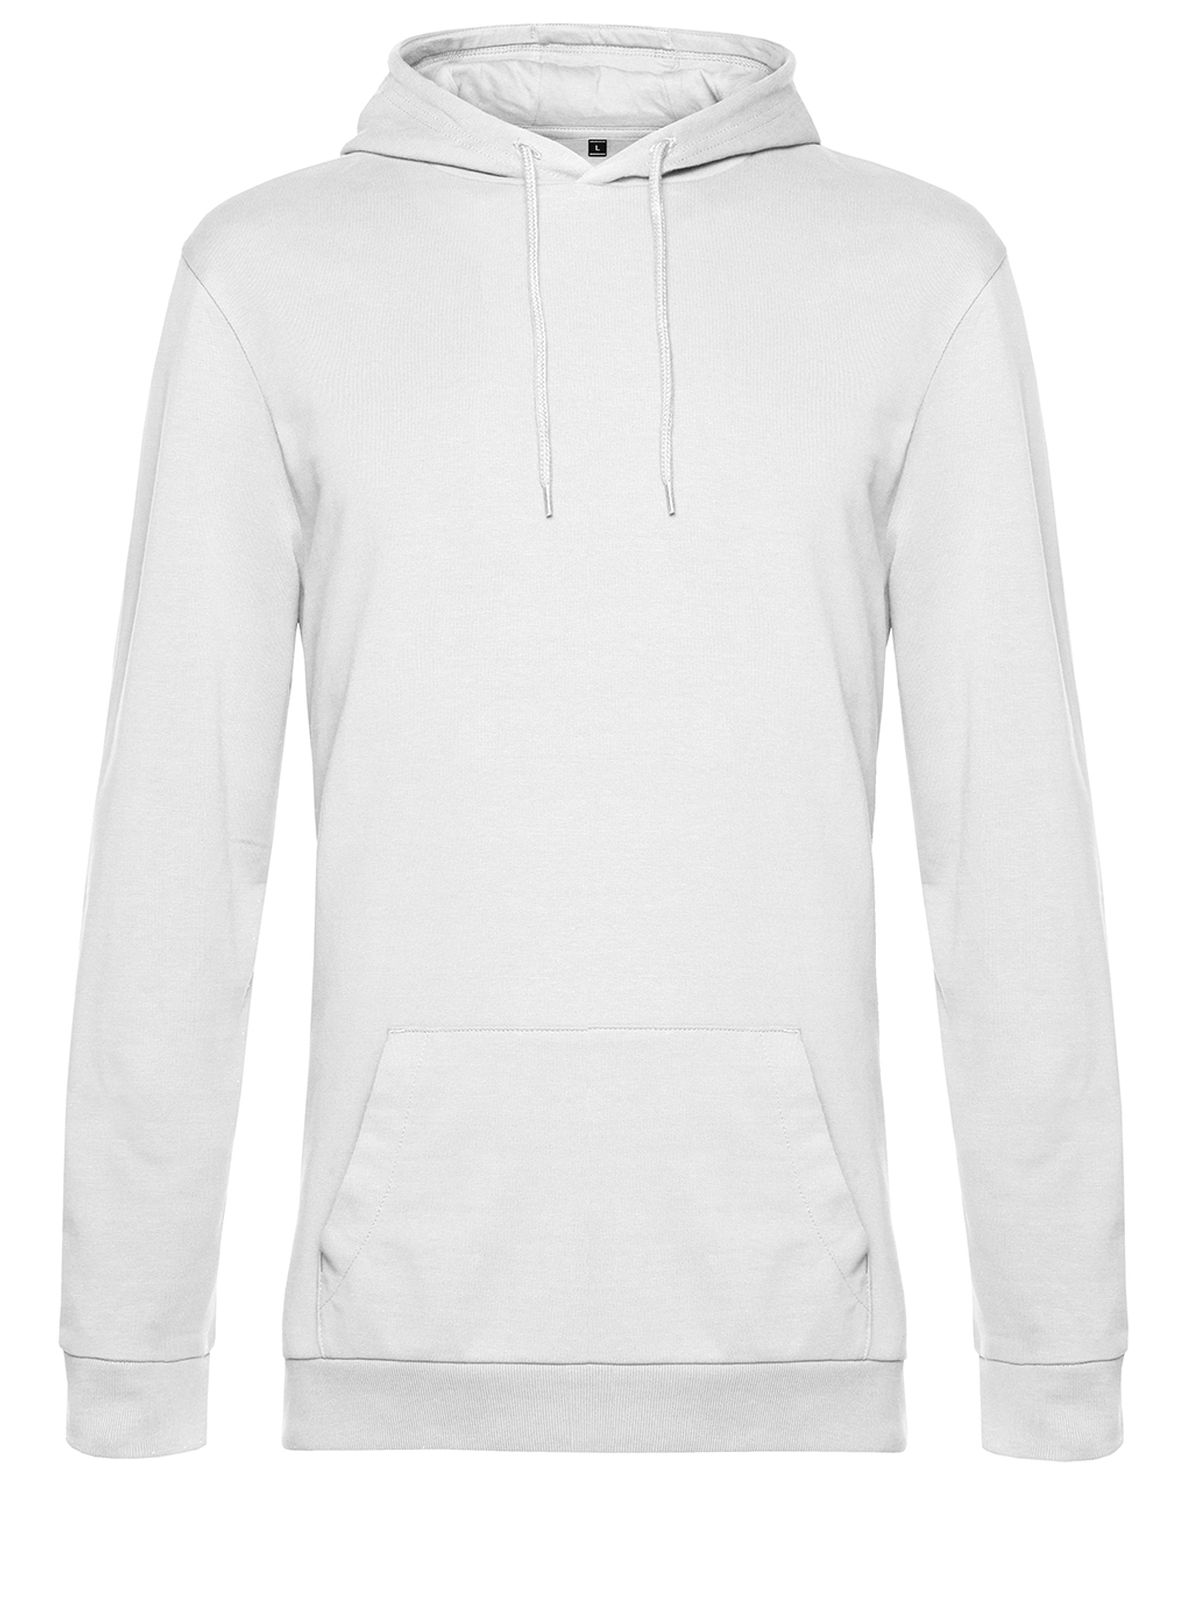 hoodie-white.webp